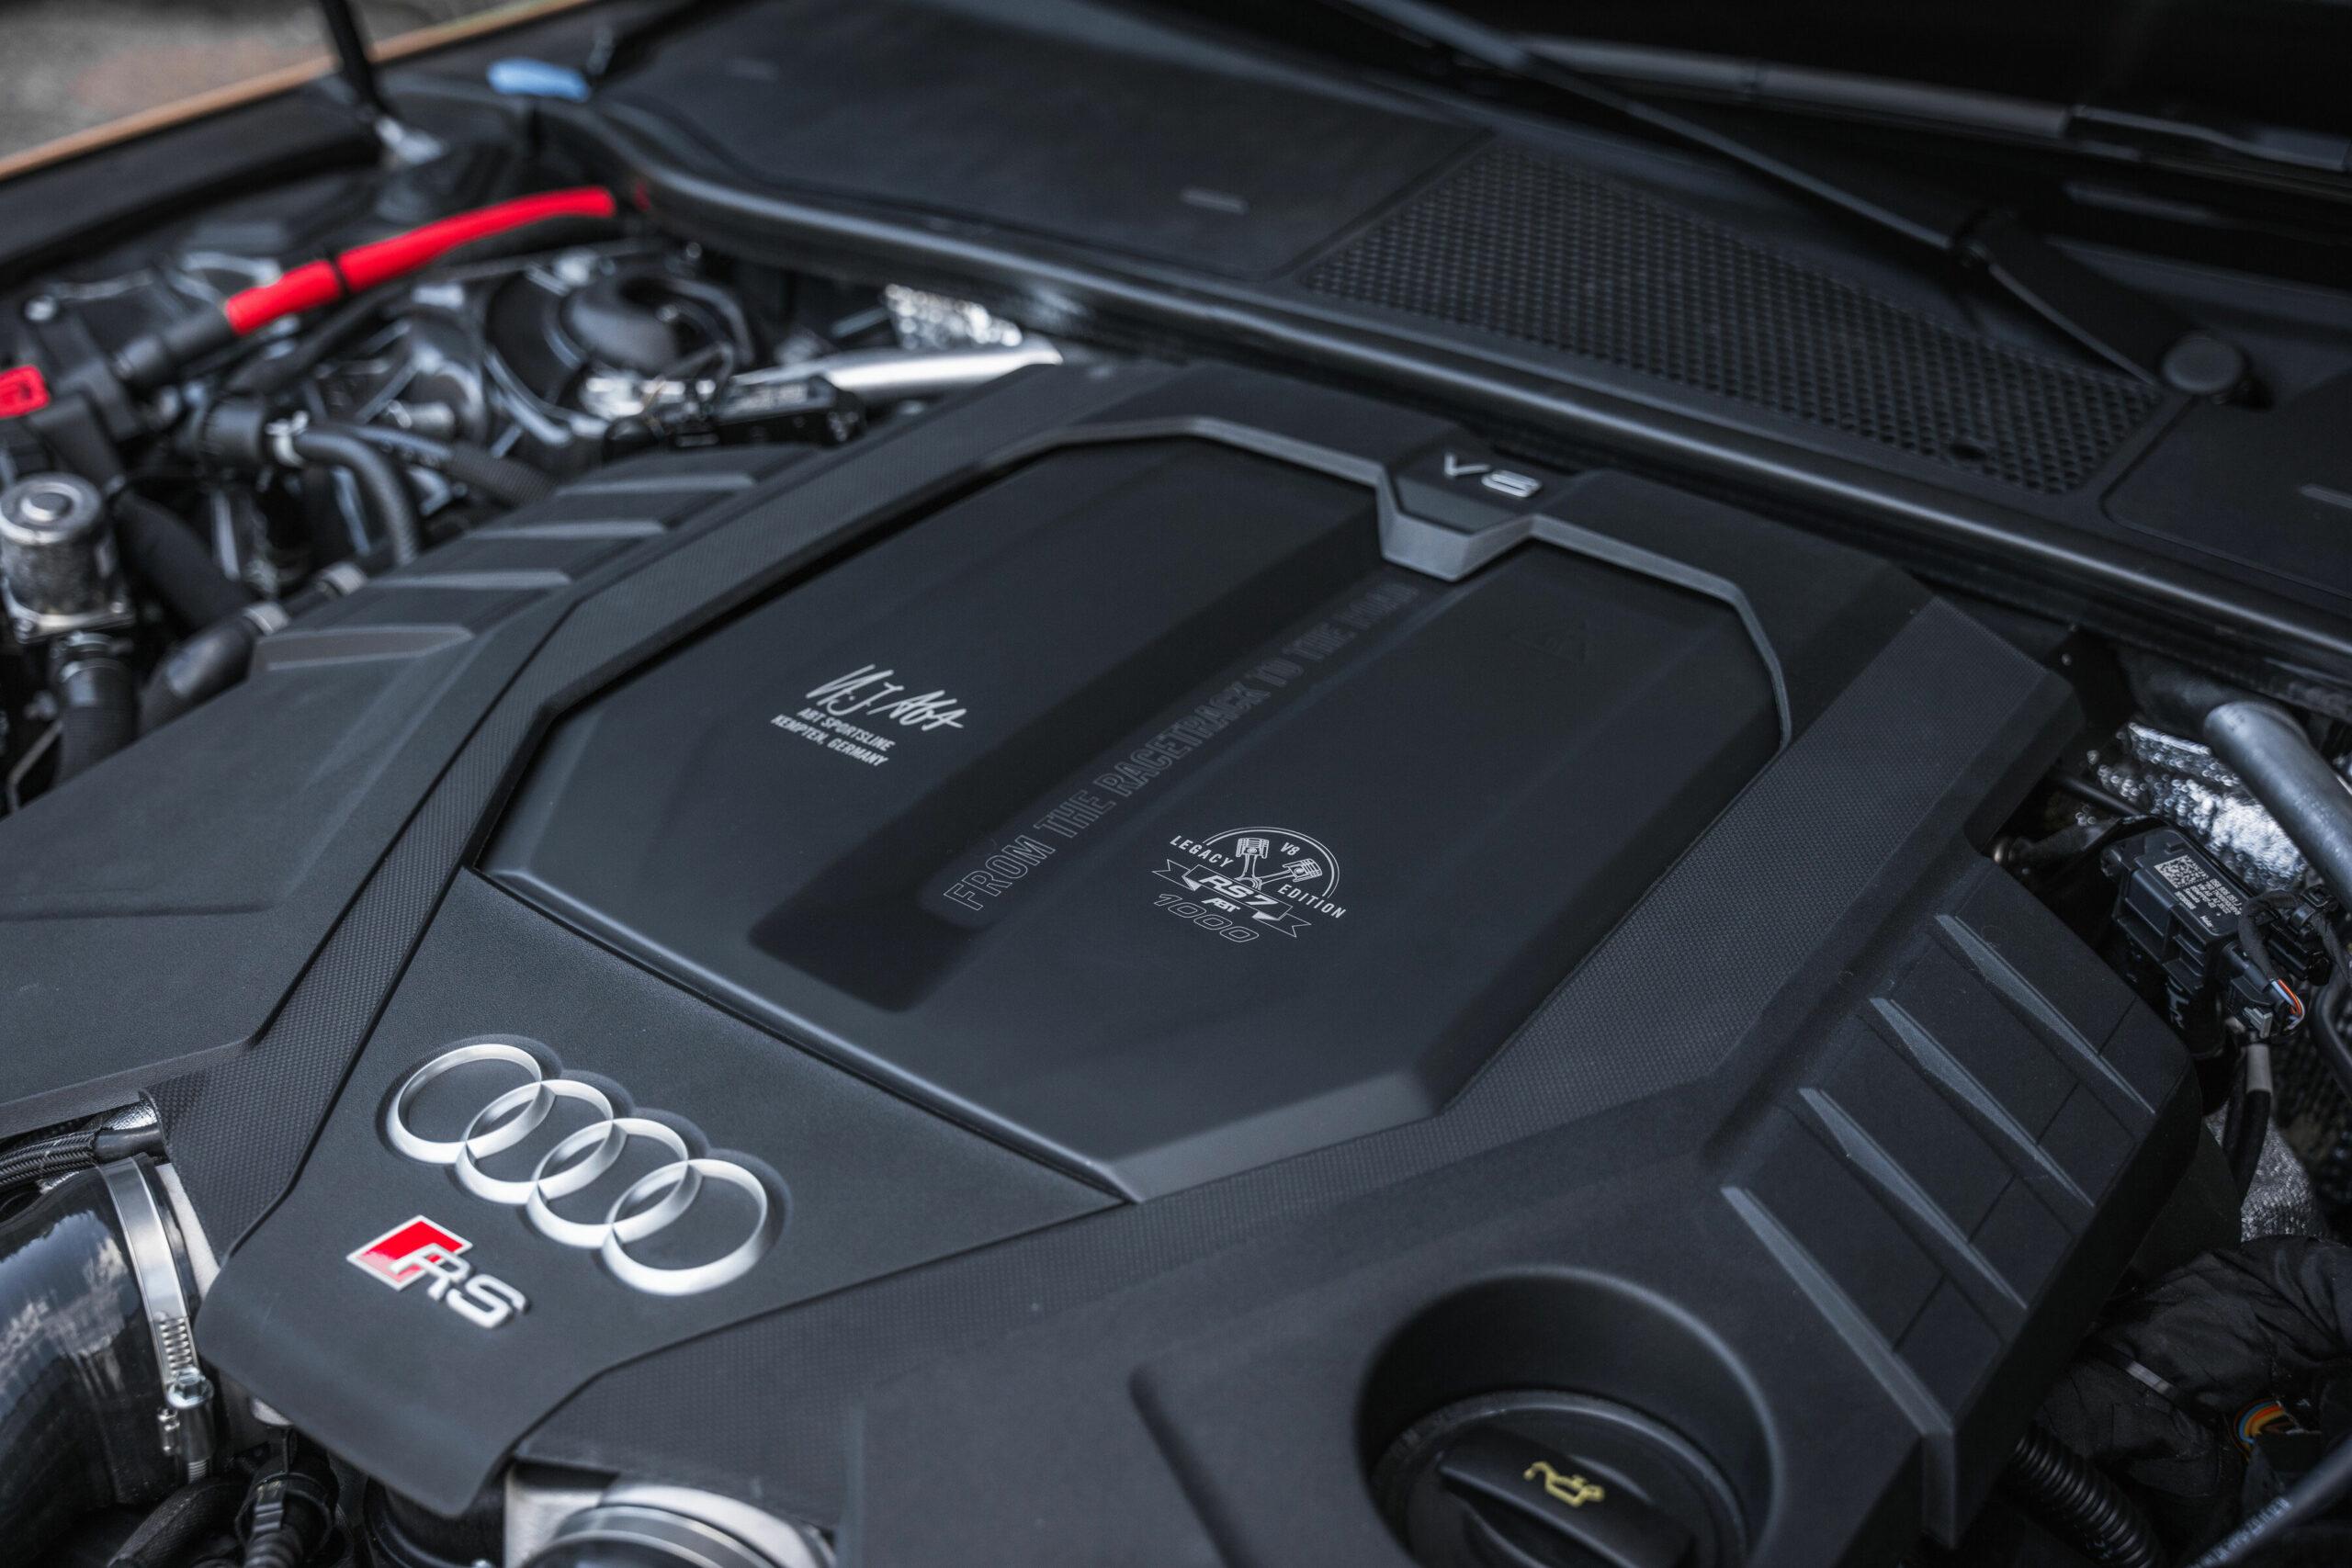 Abt Audi RS6 und RS7 LEGACY EDITION jetzt mit bis zu 1.000 PS